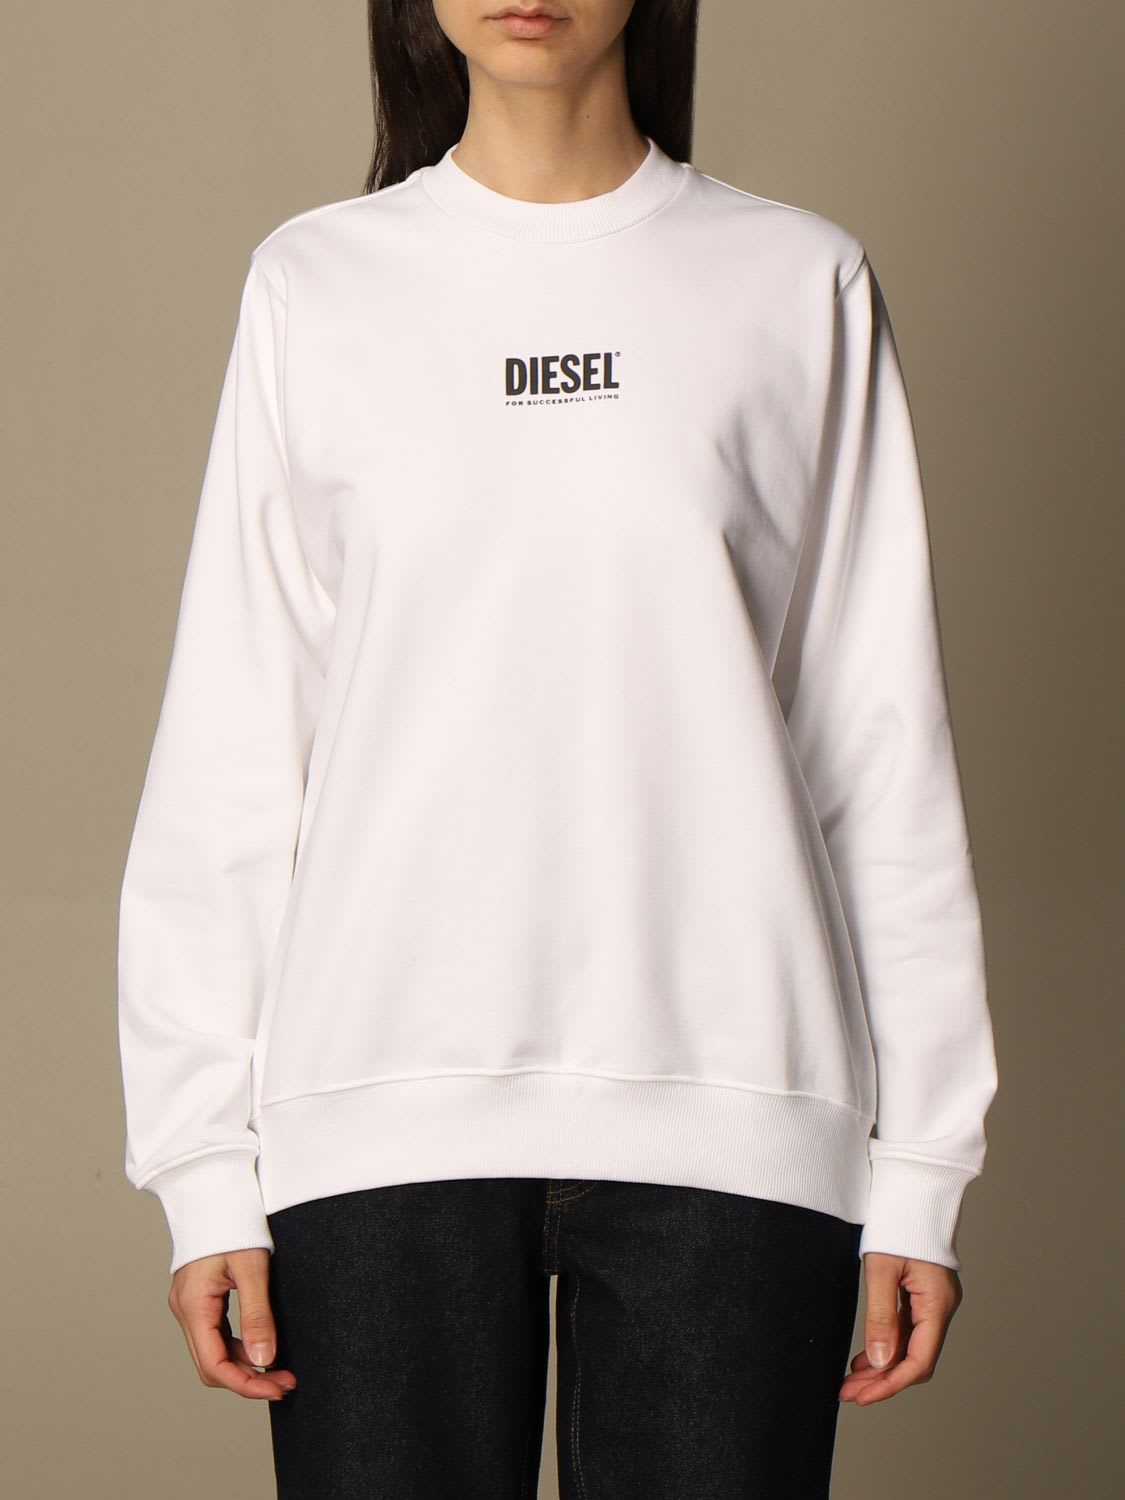 Diesel Sweatshirt Diesel Crewneck Sweatshirt With Mini Logo